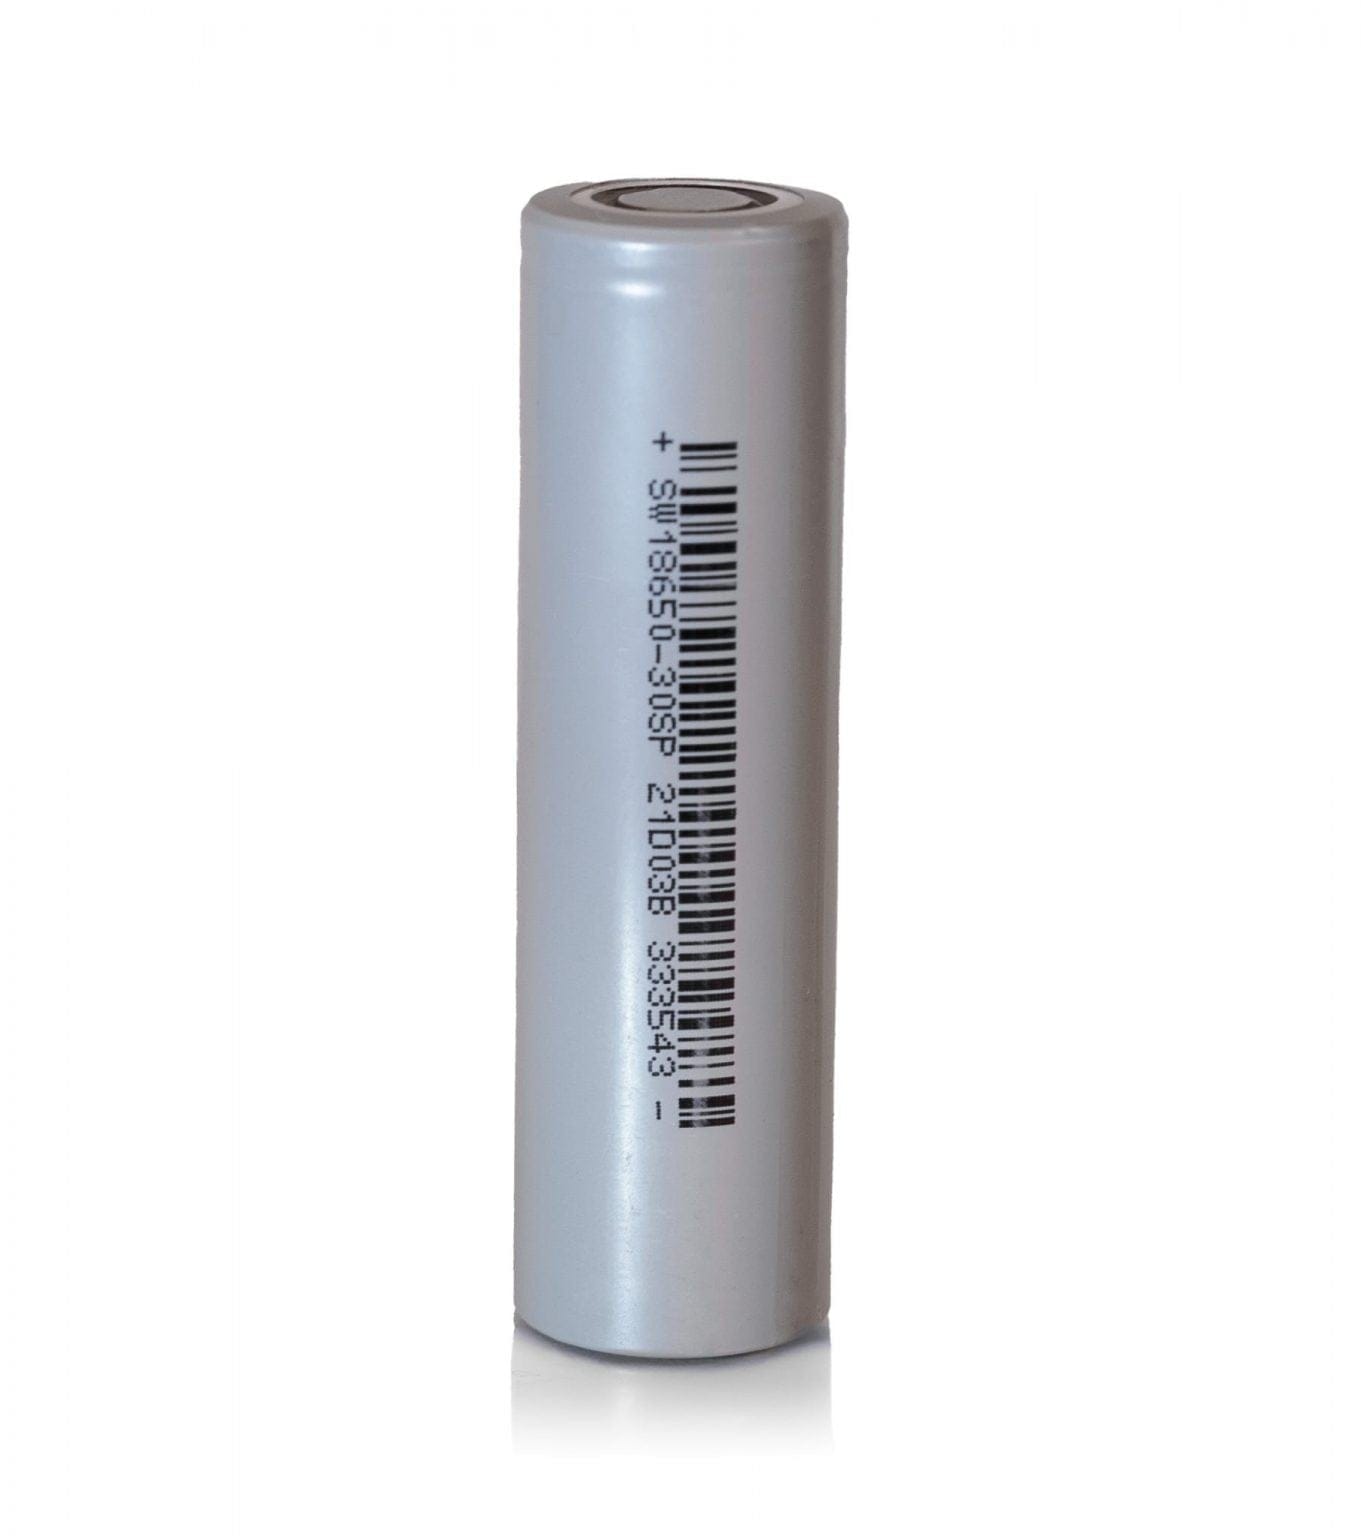 Sinowatt 30SP 18650 Battery, 18650 Lithium-ion Batteries